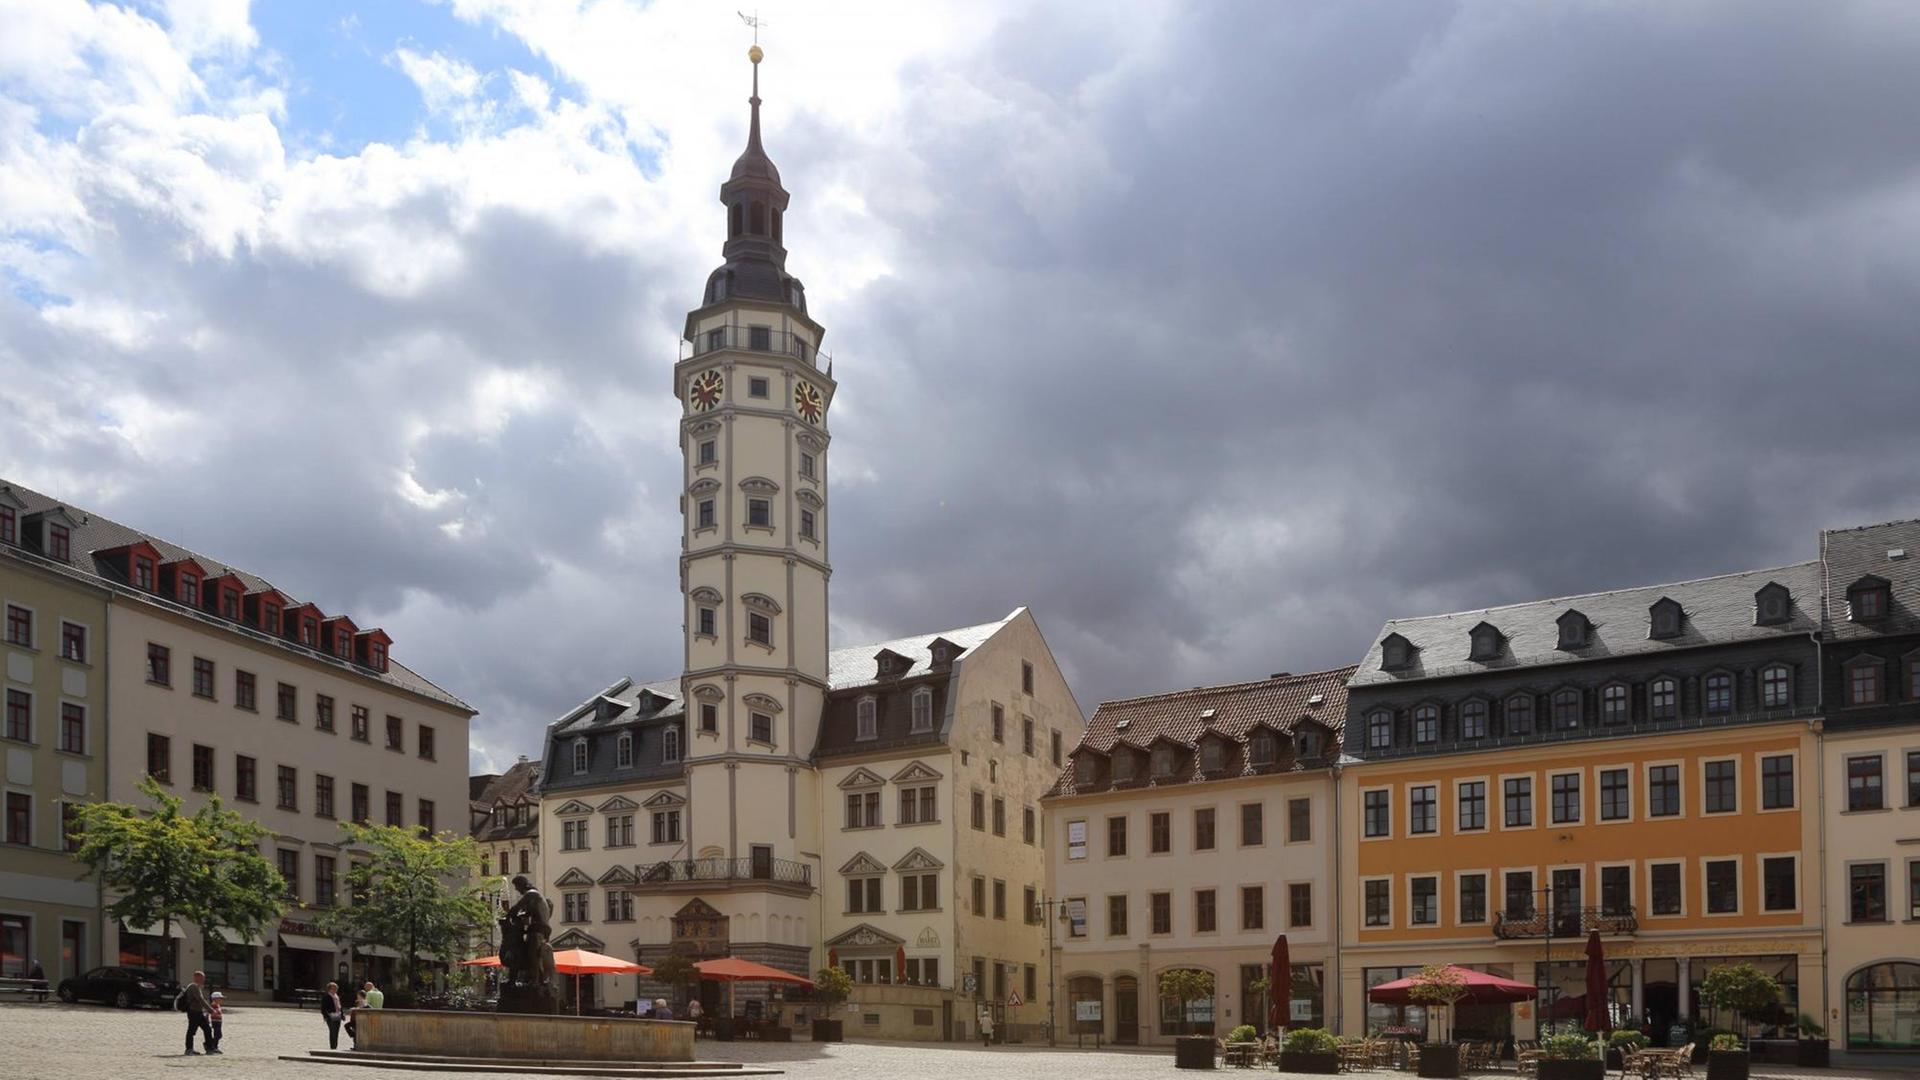 Der Marktplatz von gera mit dem Rathaus vor einem Himmel mimt dunkler Wolke